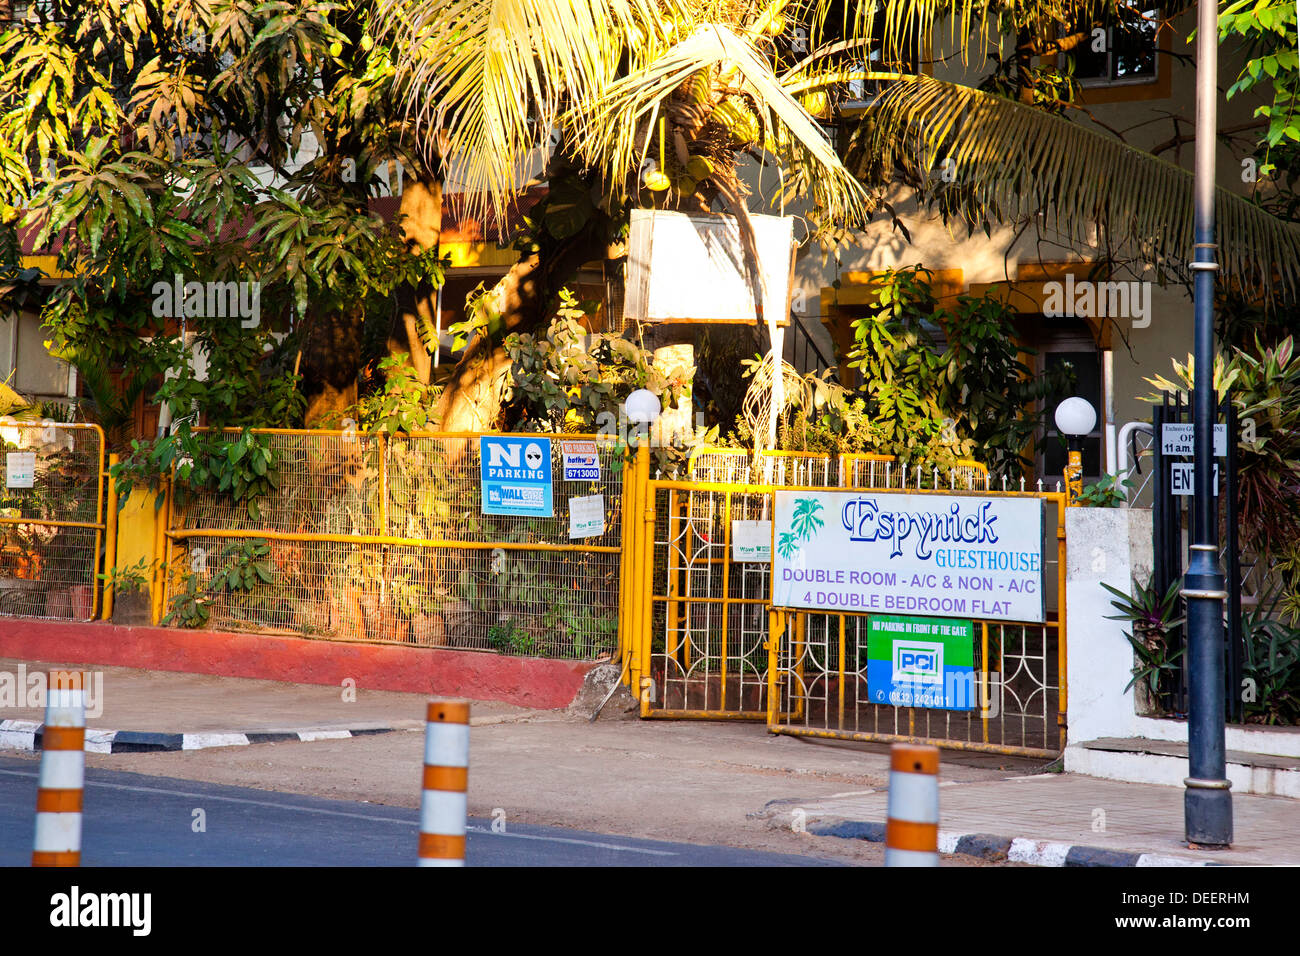 Entrance of a guesthouse, Espynick, Panaji, Goa, India Stock Photo